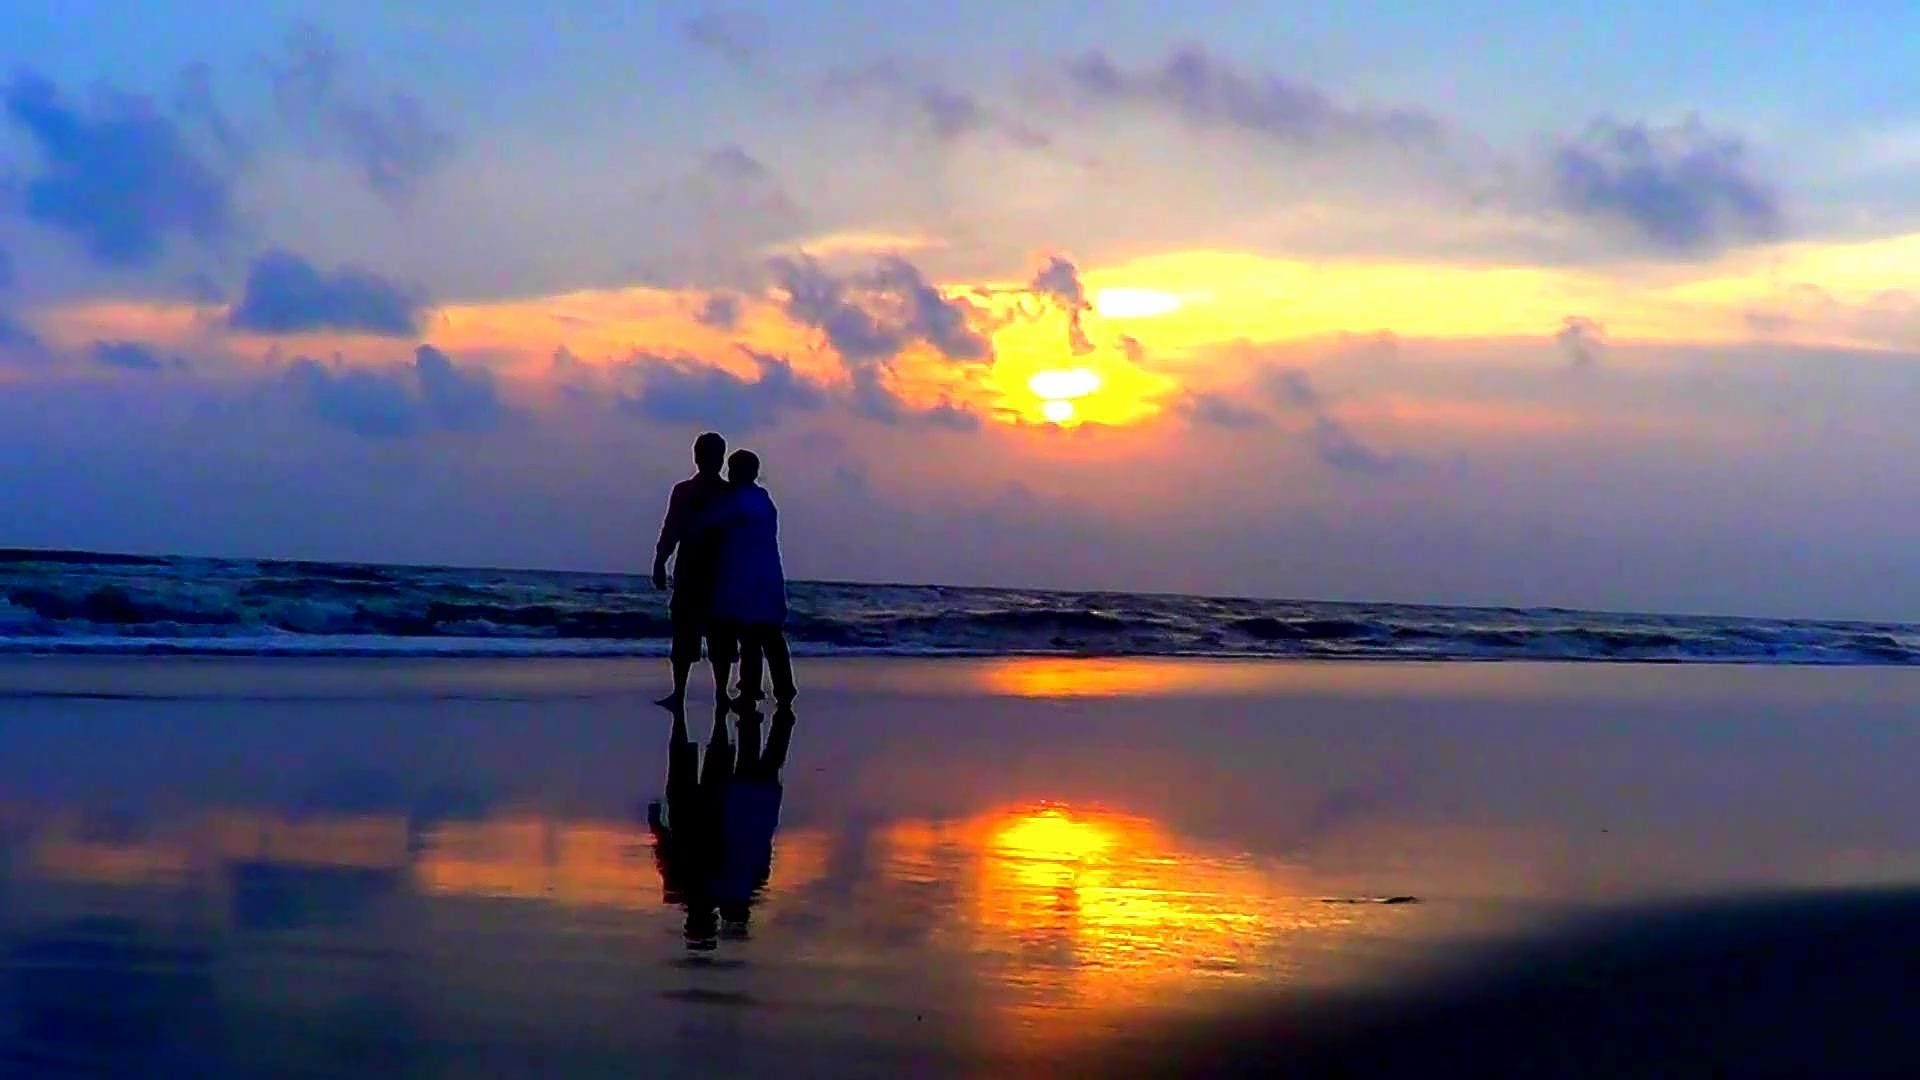 Cloudy-Sunset-On-Sea-Beach-On Earth-Himchari-Cox's-Bazar.jpg